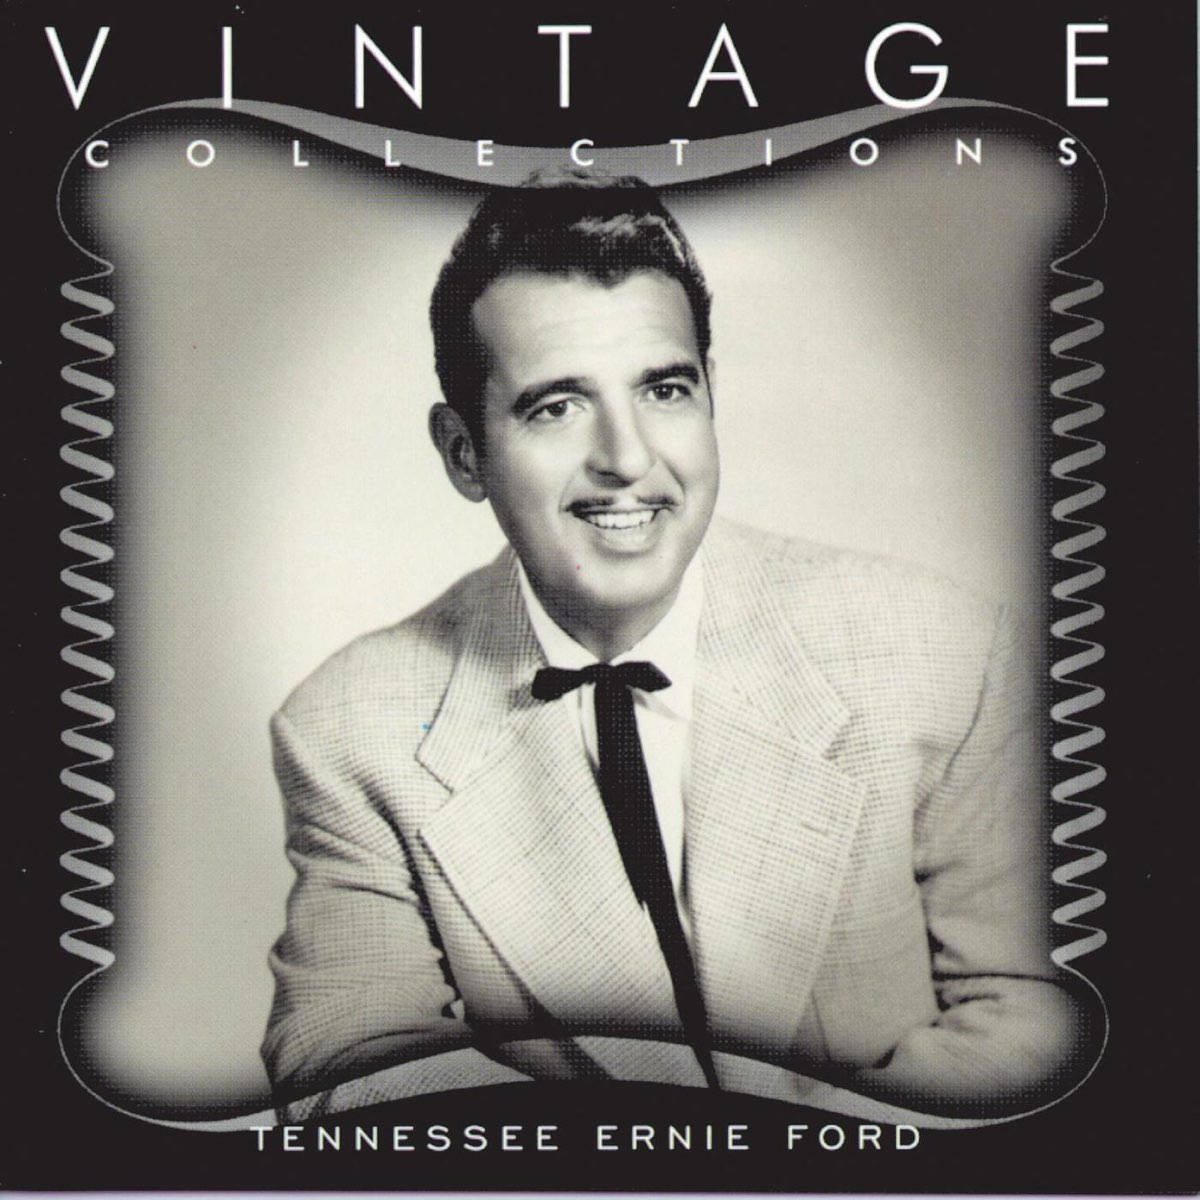 Amerikansk sanger Tennessee Ernie Ford til Vintage Collections Album Wallpaper. Wallpaper